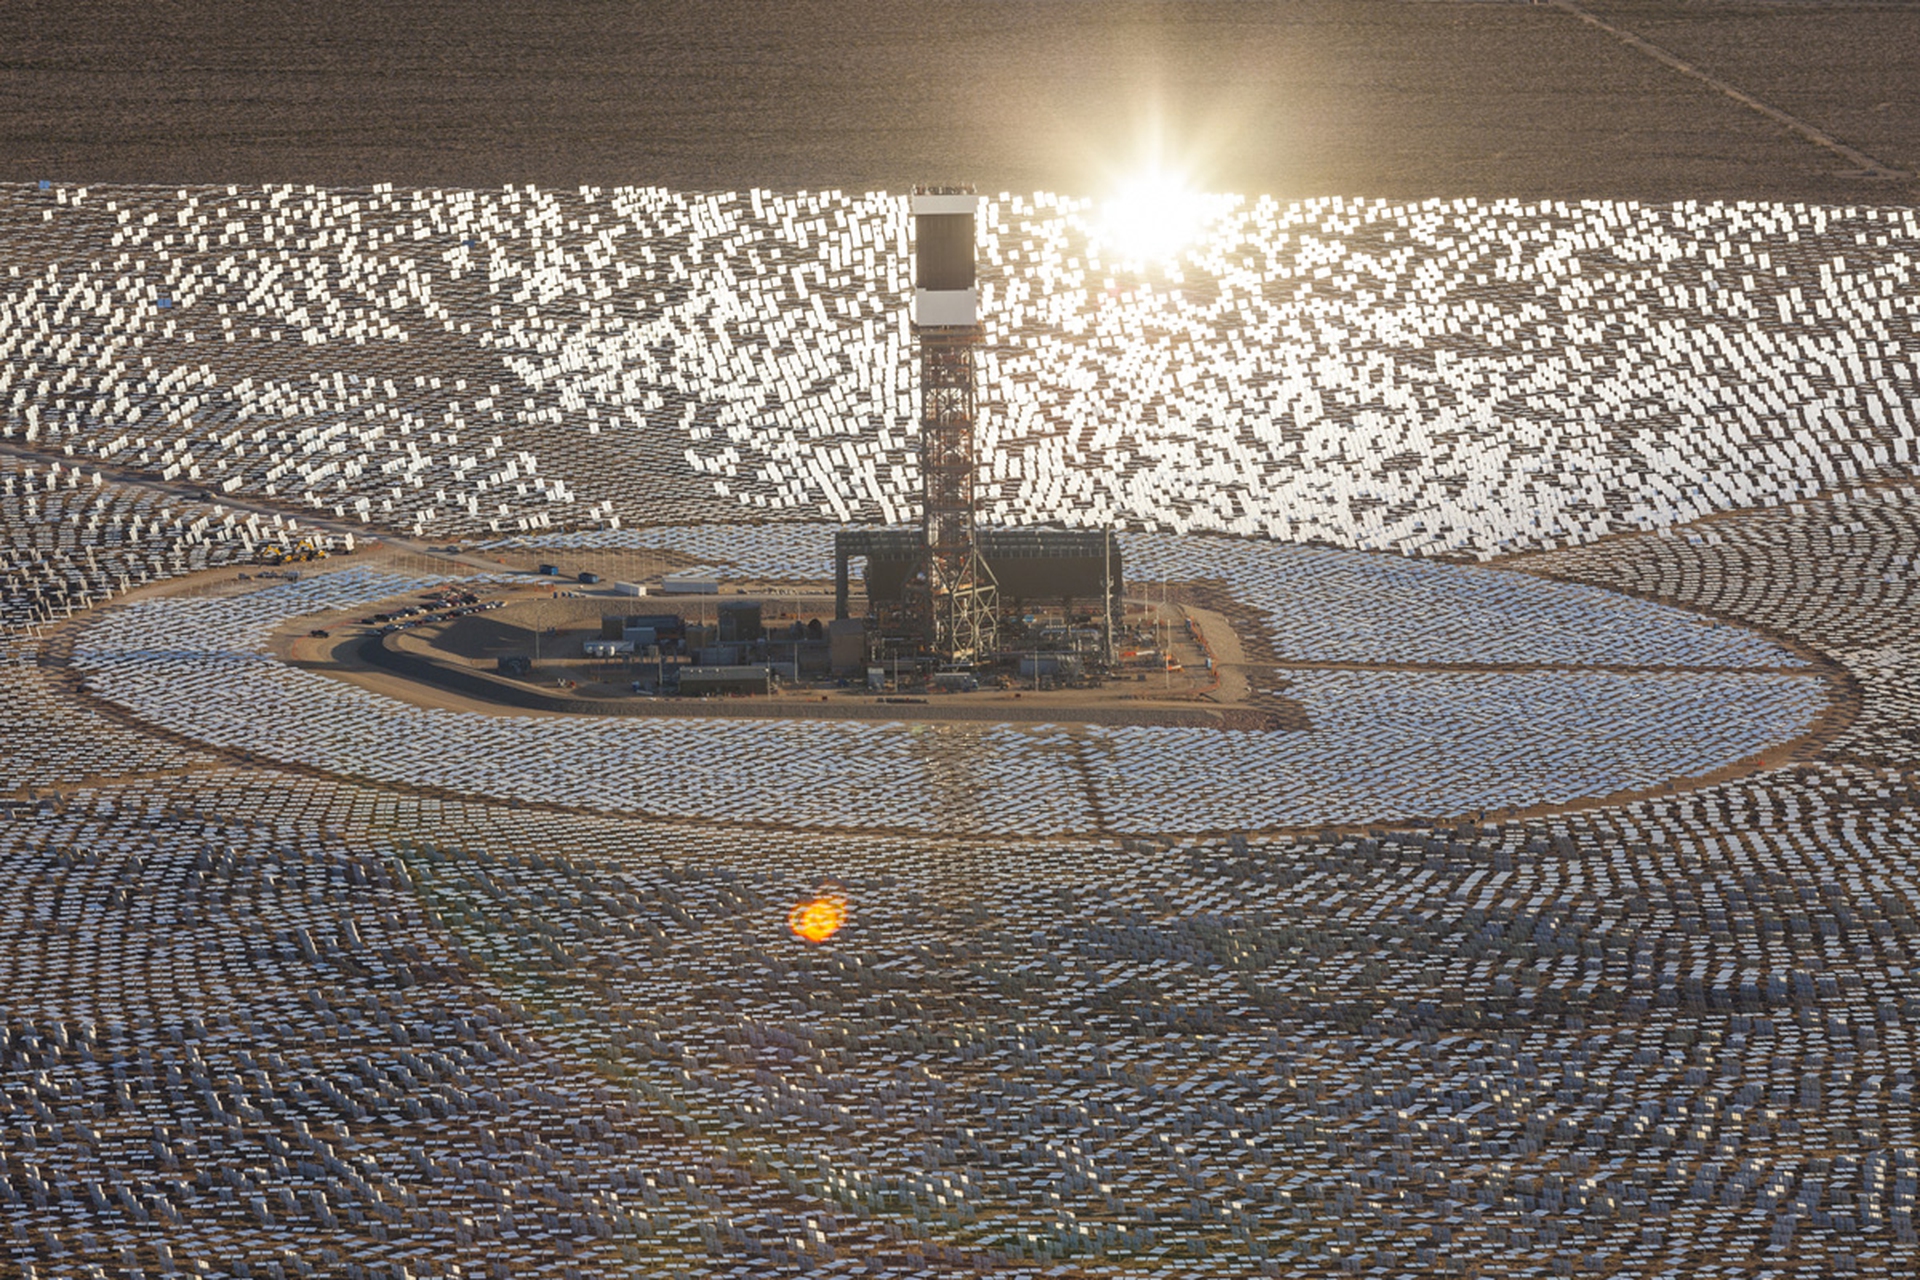 Самый большой объект солнечной. Солнечная станция в Мохаве. Солнечная станция в пустыне Мохаве. Крупнейшая в мире Солнечная электростанция Айванпа. Солнечная электростанция в Мохаве.